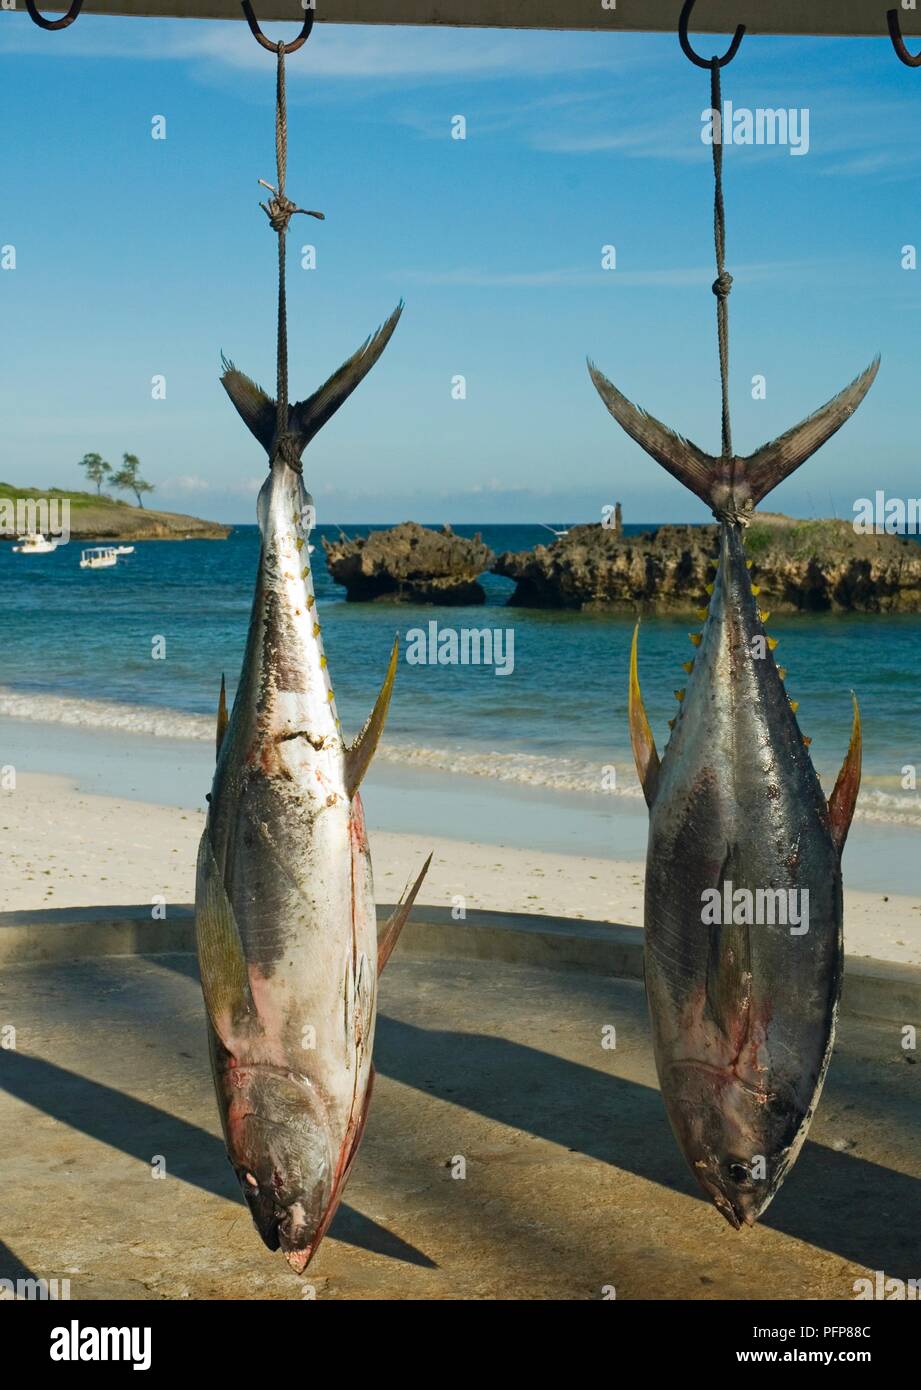 Kenya, Watamu, Hemingway's Resort, Yellowfin tuna (Thunnus albacares) hung on hooks to be weighed Stock Photo